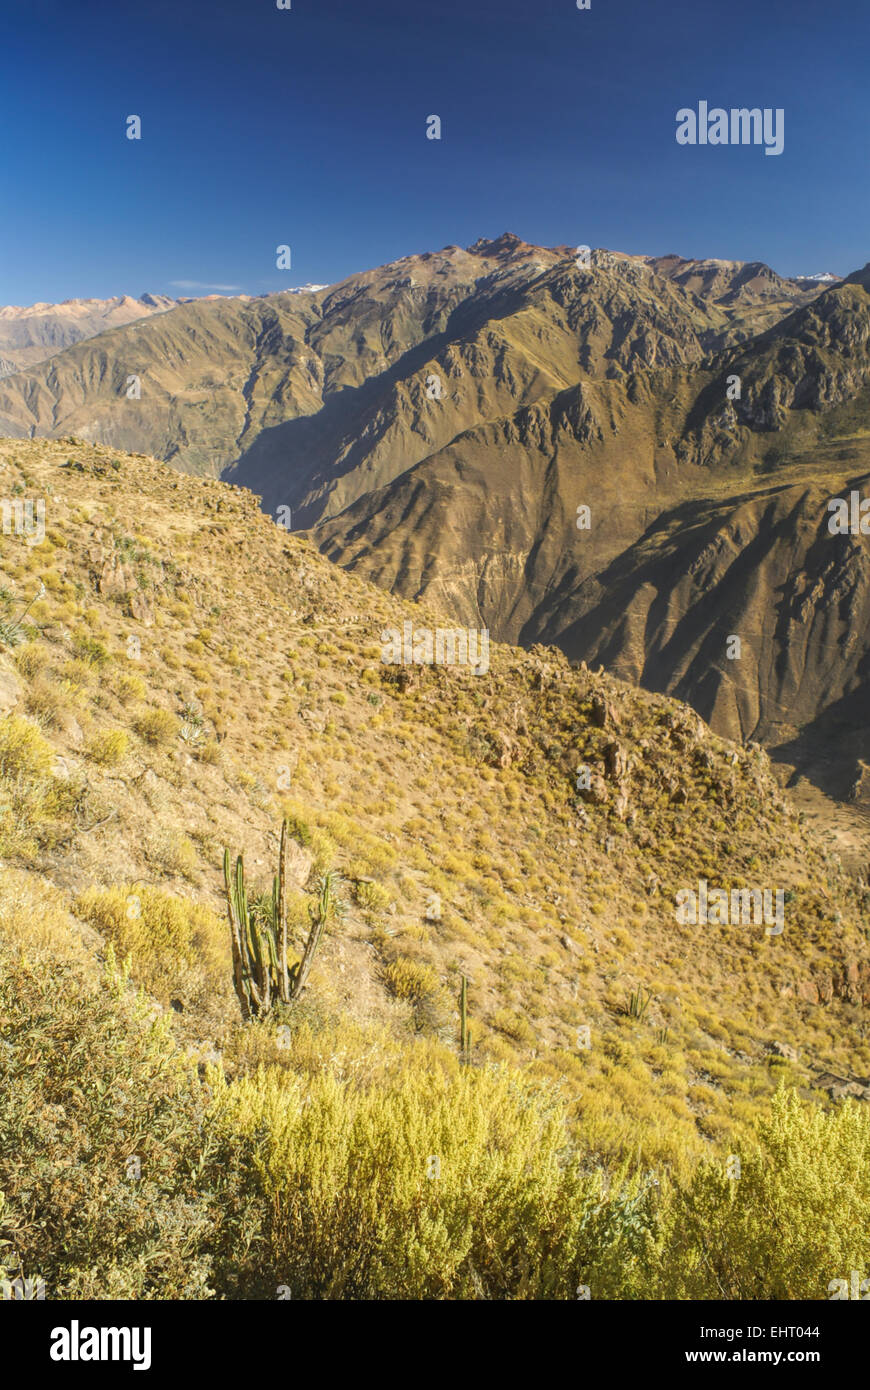 Vue panoramique du canon del Colca, célèbre destination touristique au Pérou Banque D'Images